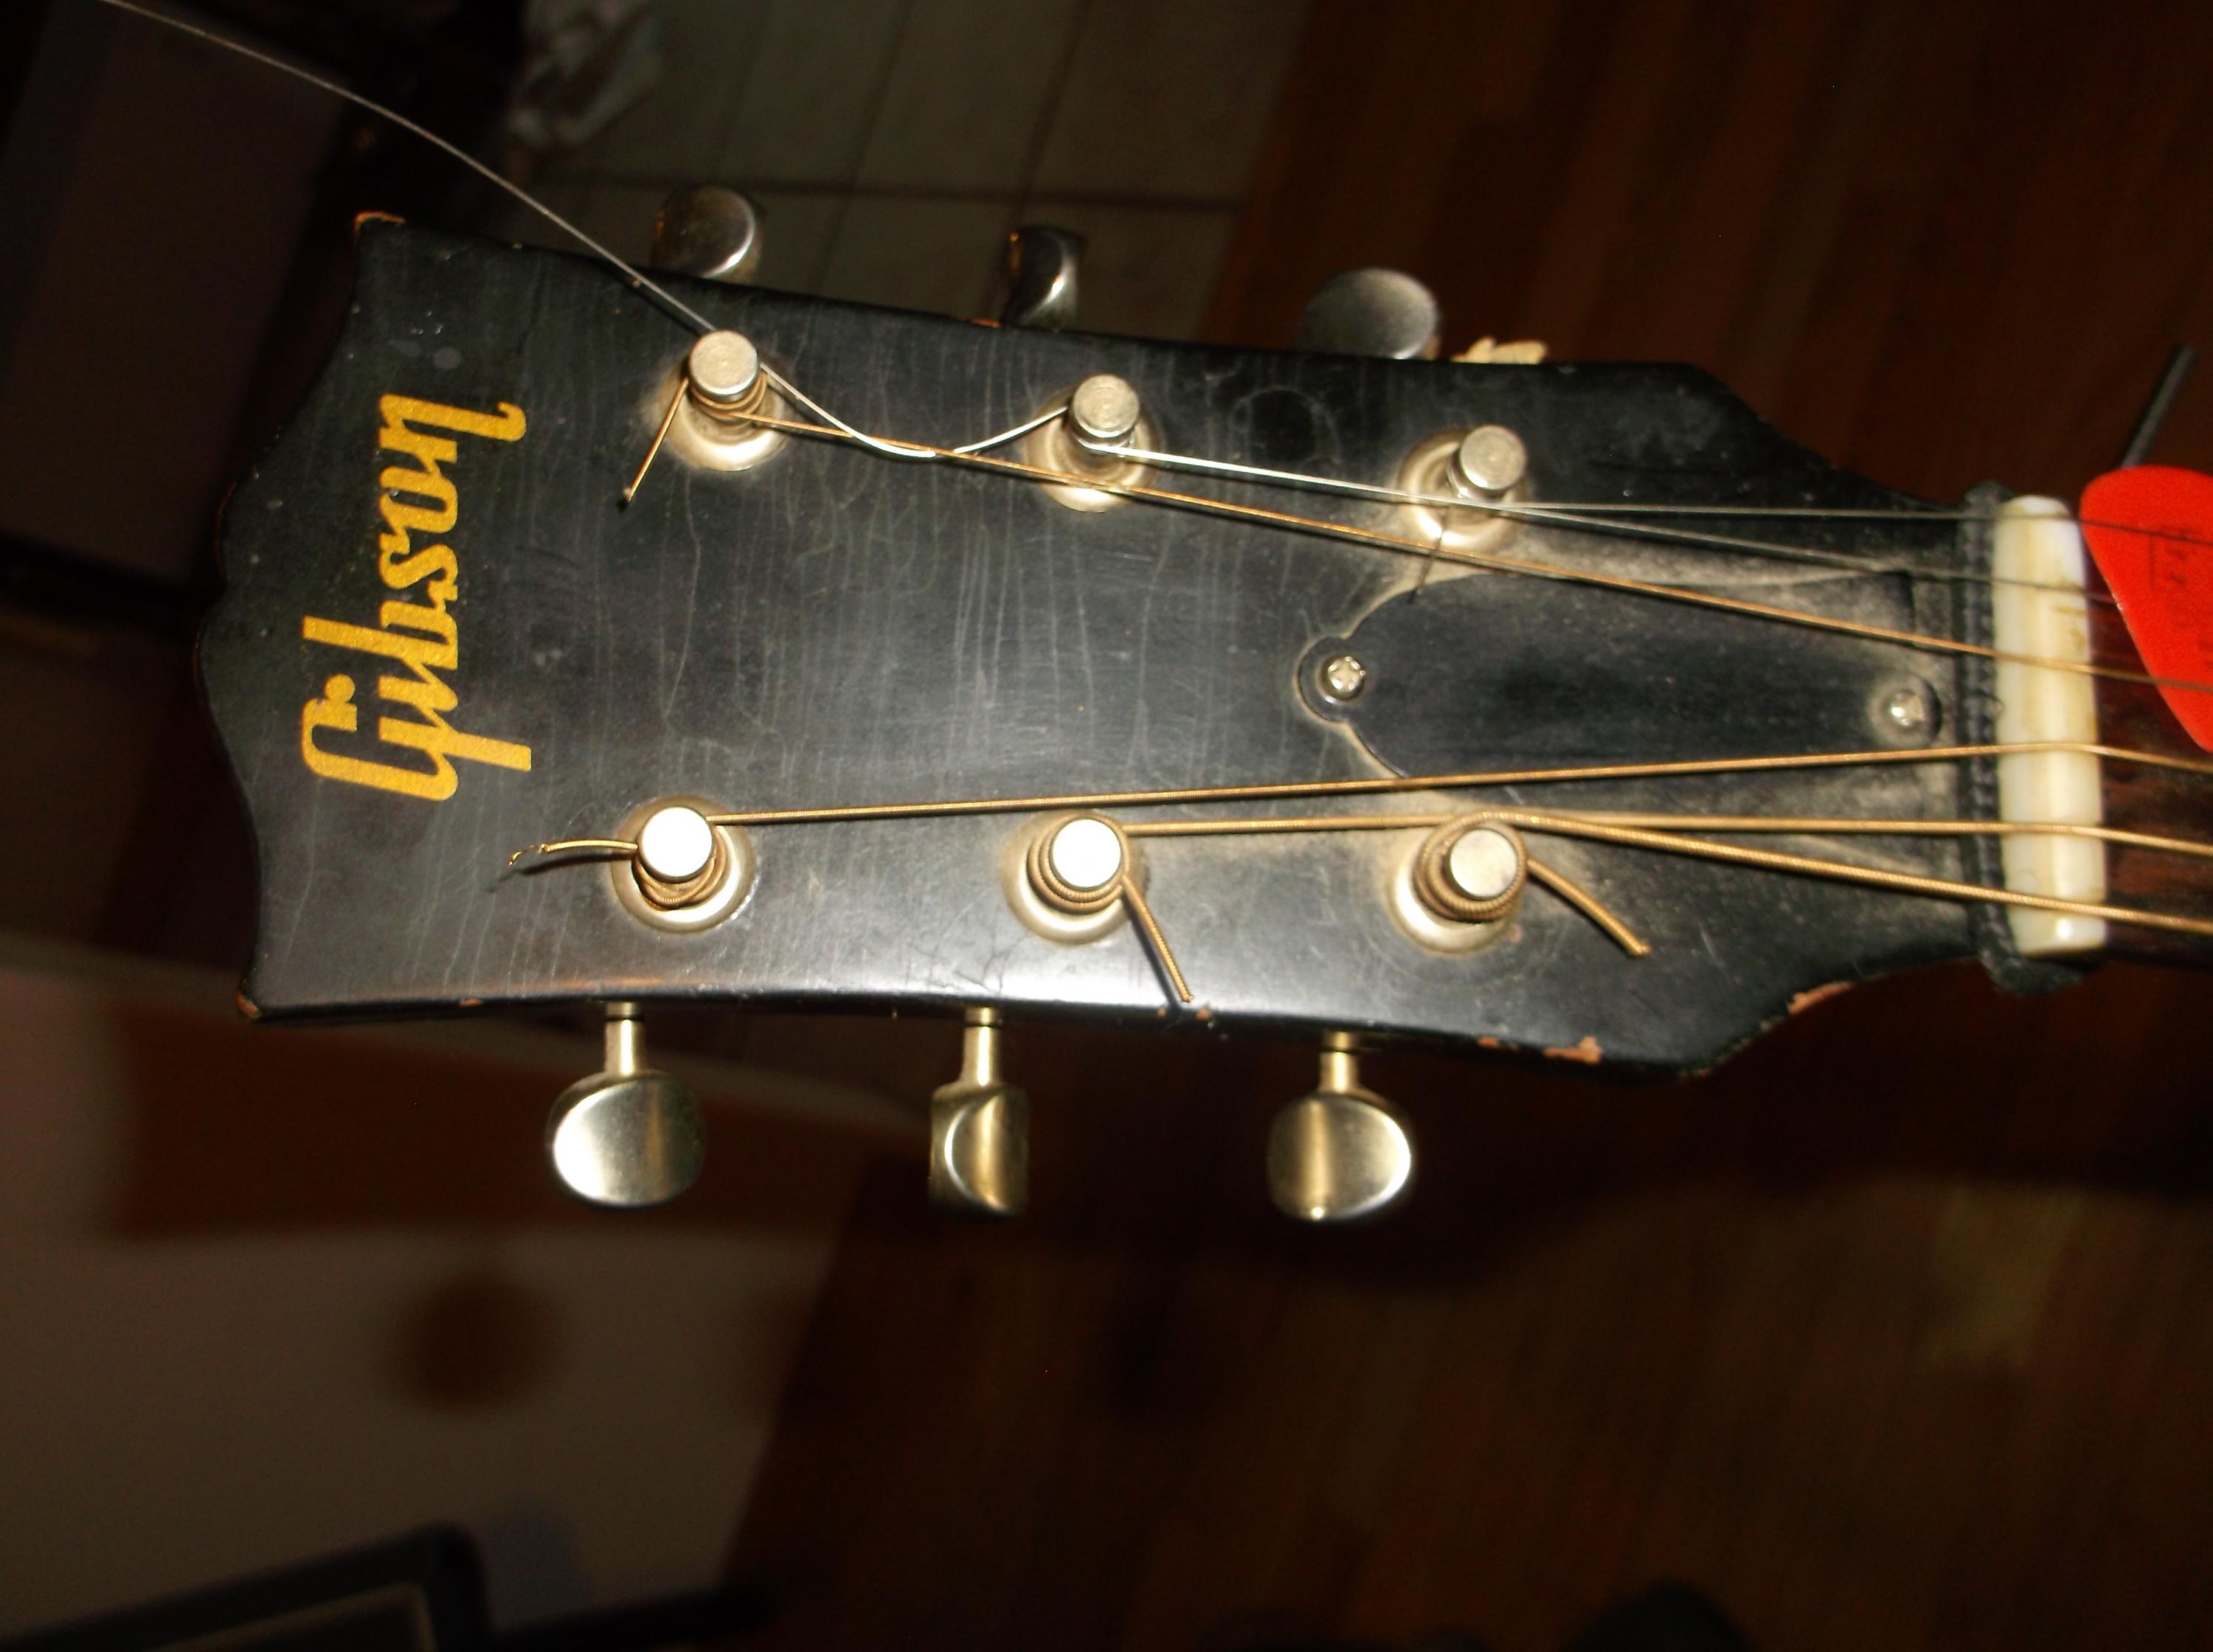 Gibson L-50-dscf5673-jpg